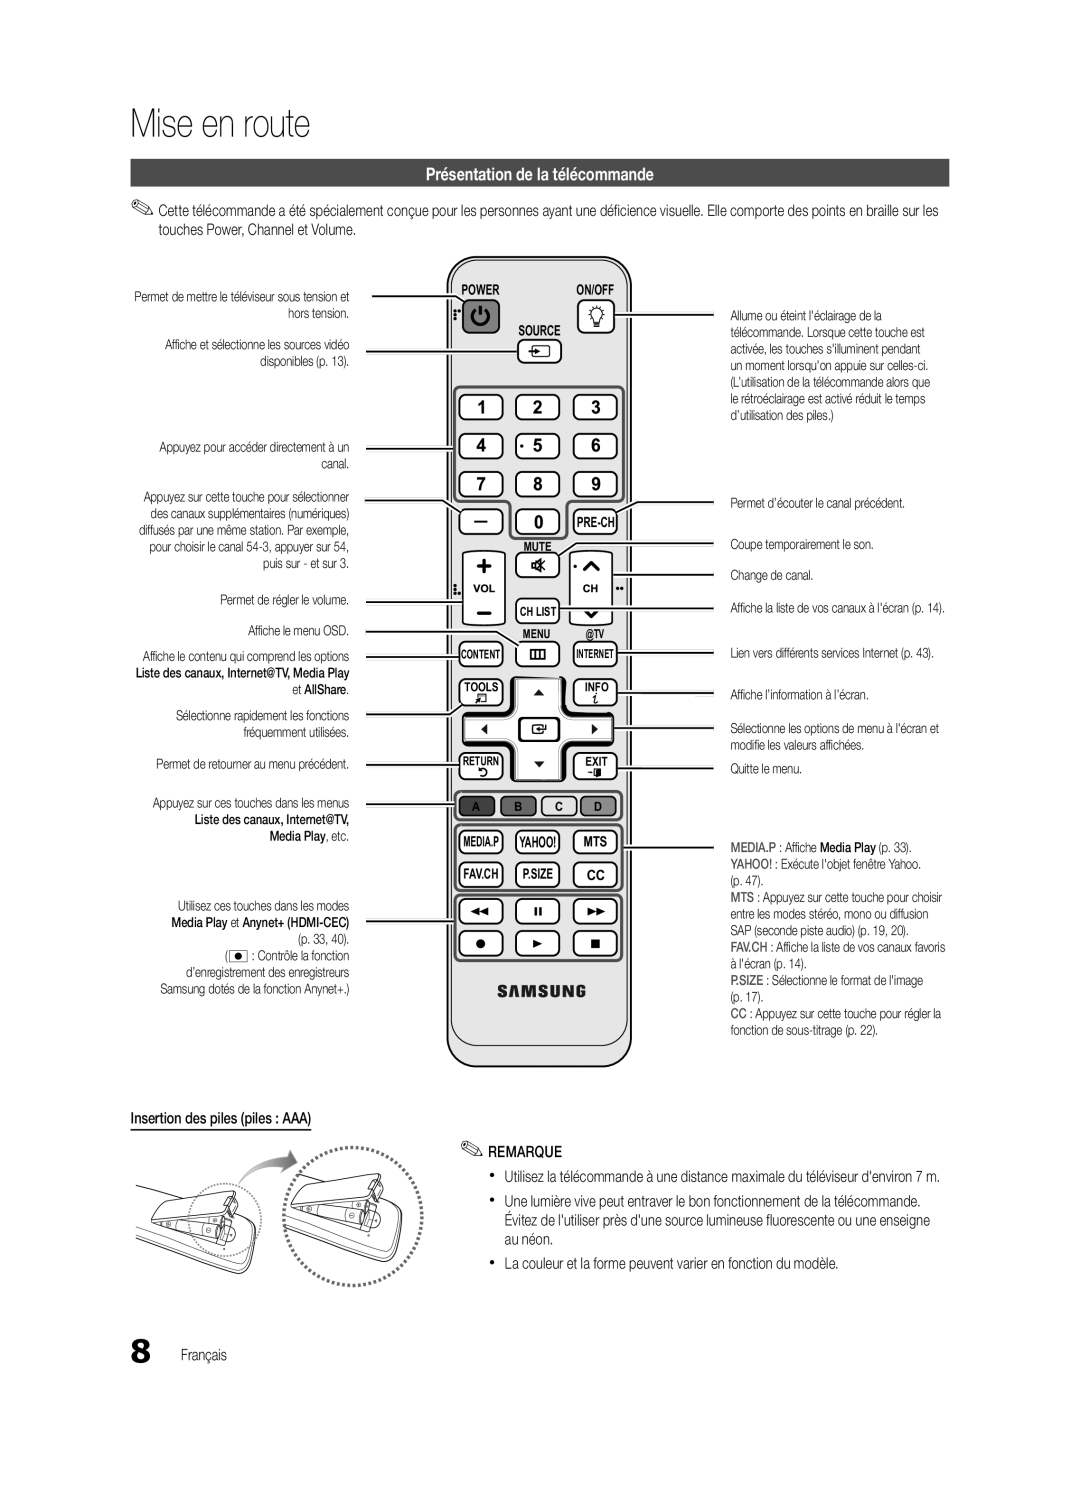 Samsung BN68-02711B-04 Présentation de la télécommande, Mise en route, Insertion des piles piles AAA REMARQUE, Français 